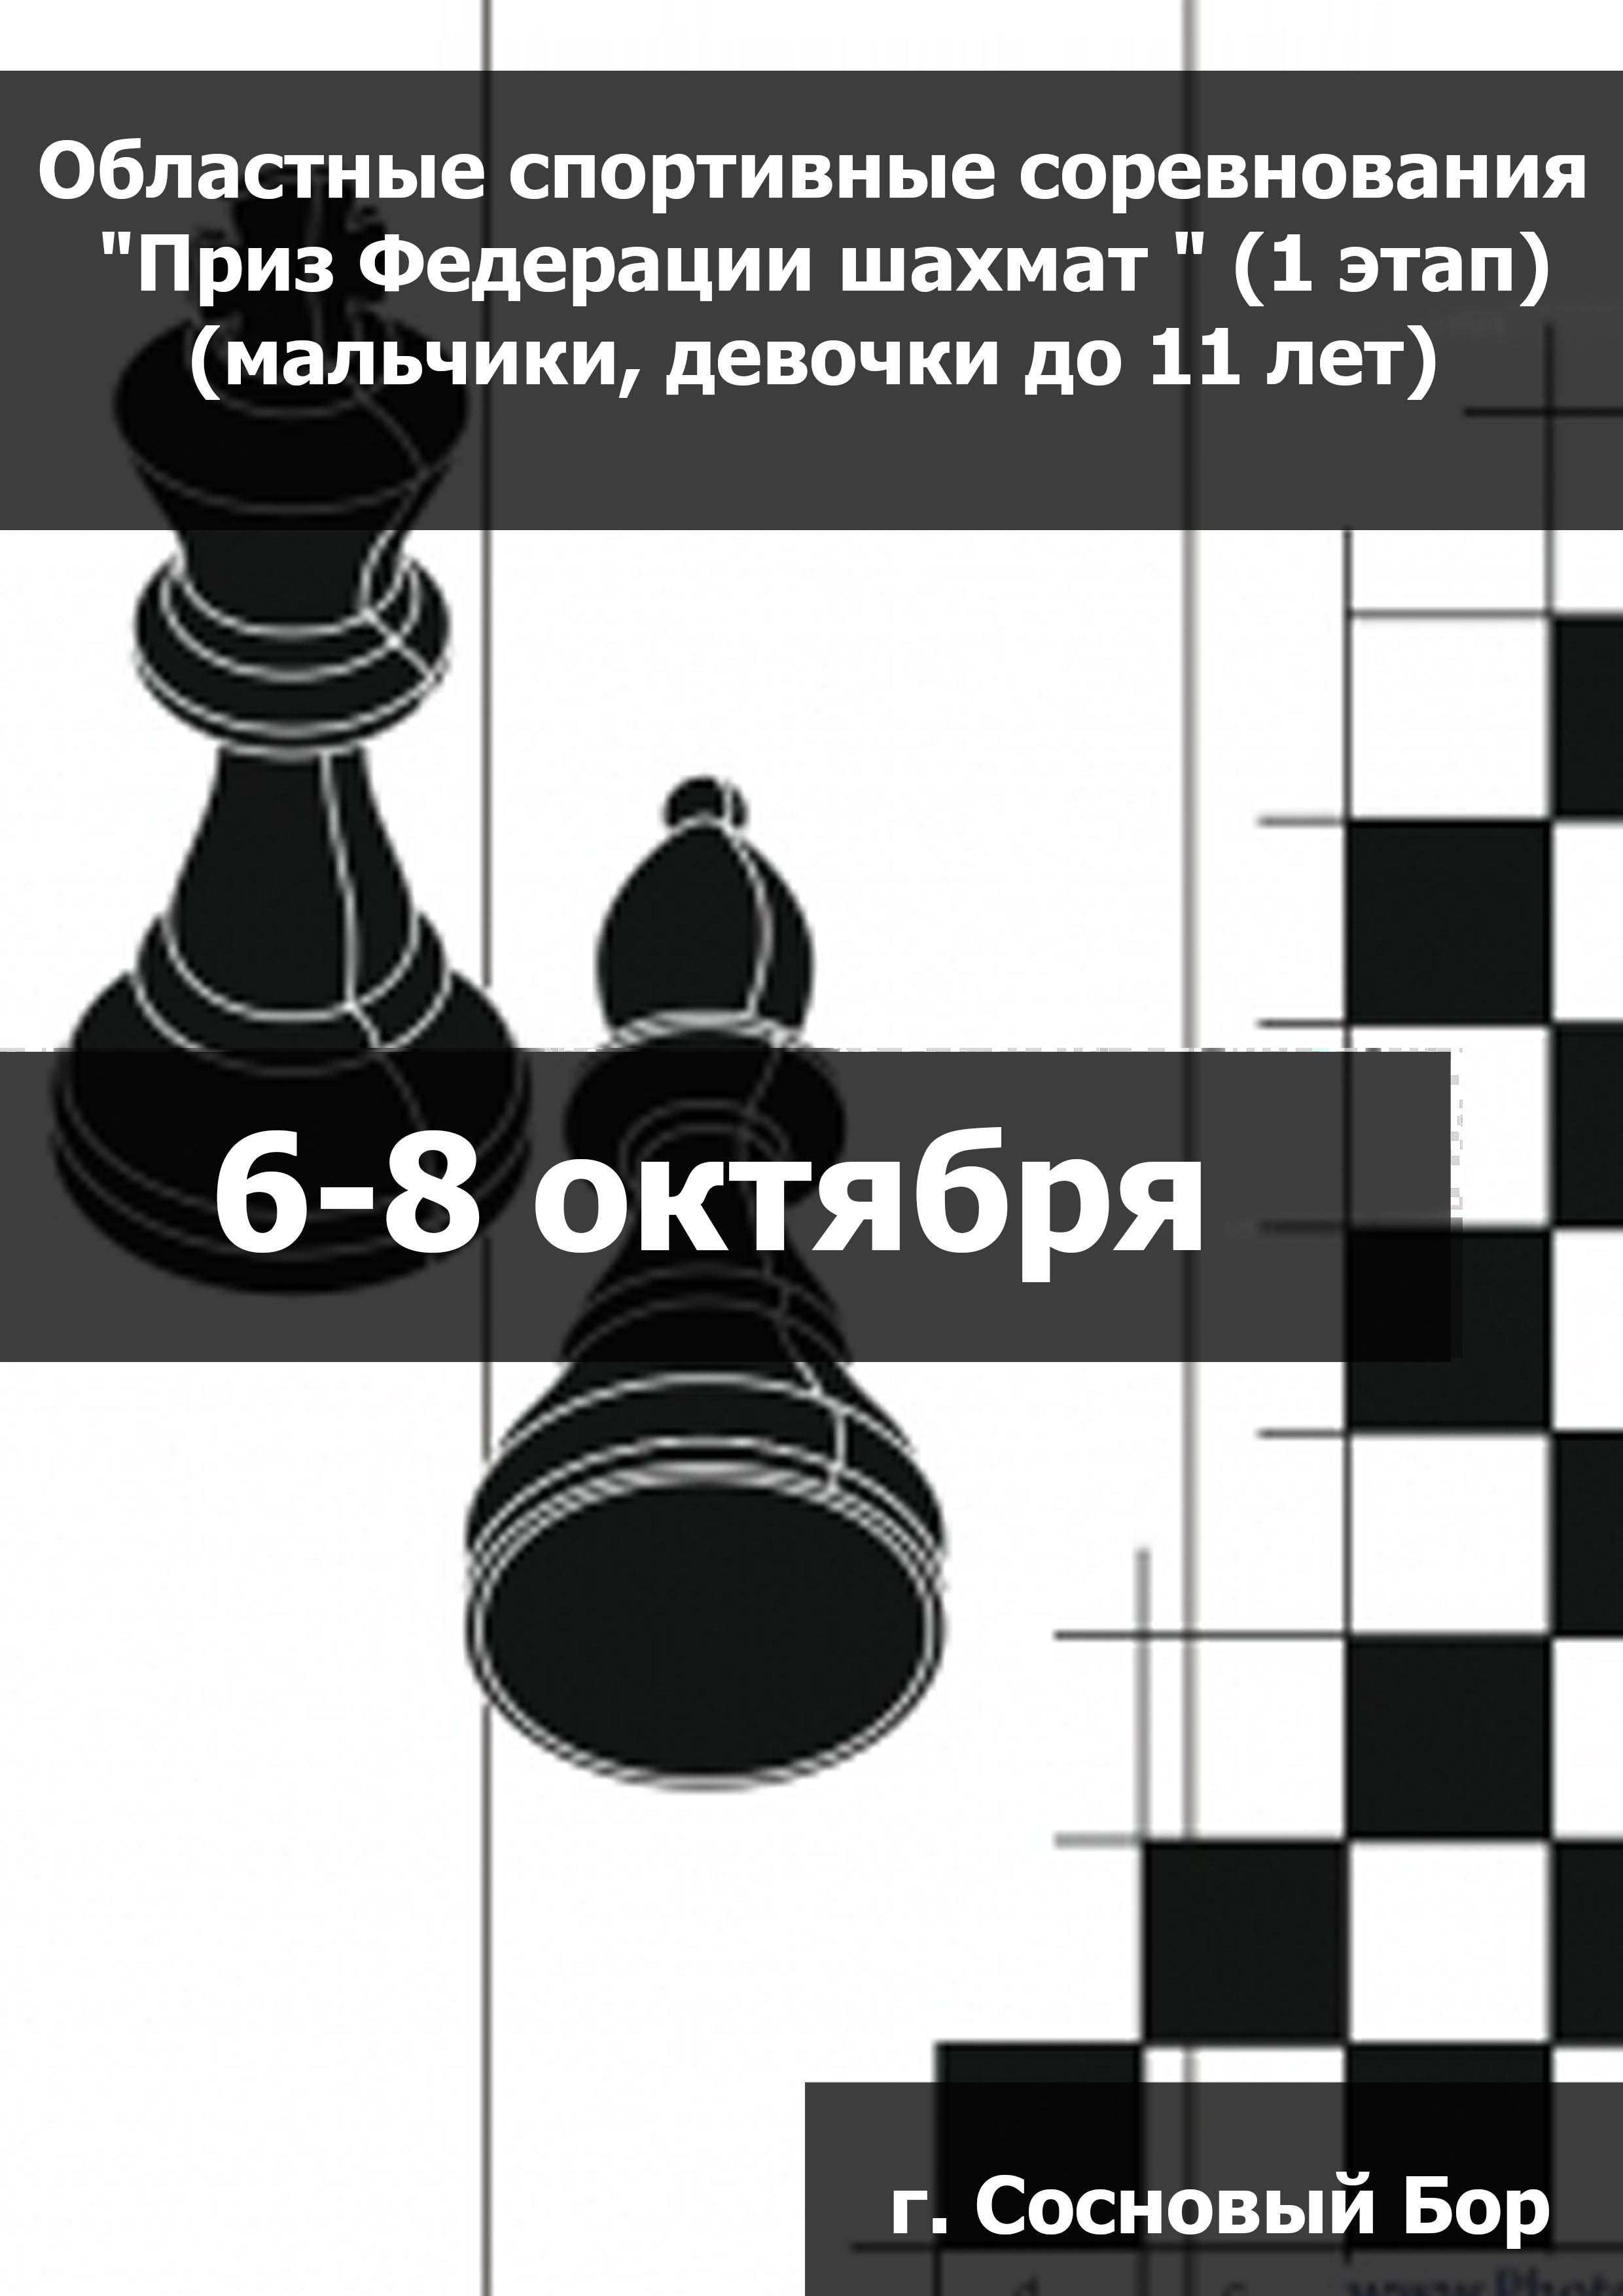 Областные спортивные соревнования "Приз Федерации шахмат " (1 этап) (мальчики, девочки до 11 лет) 6  ខែតុលារបស់
 2023  នៅឆ្នាំ
 